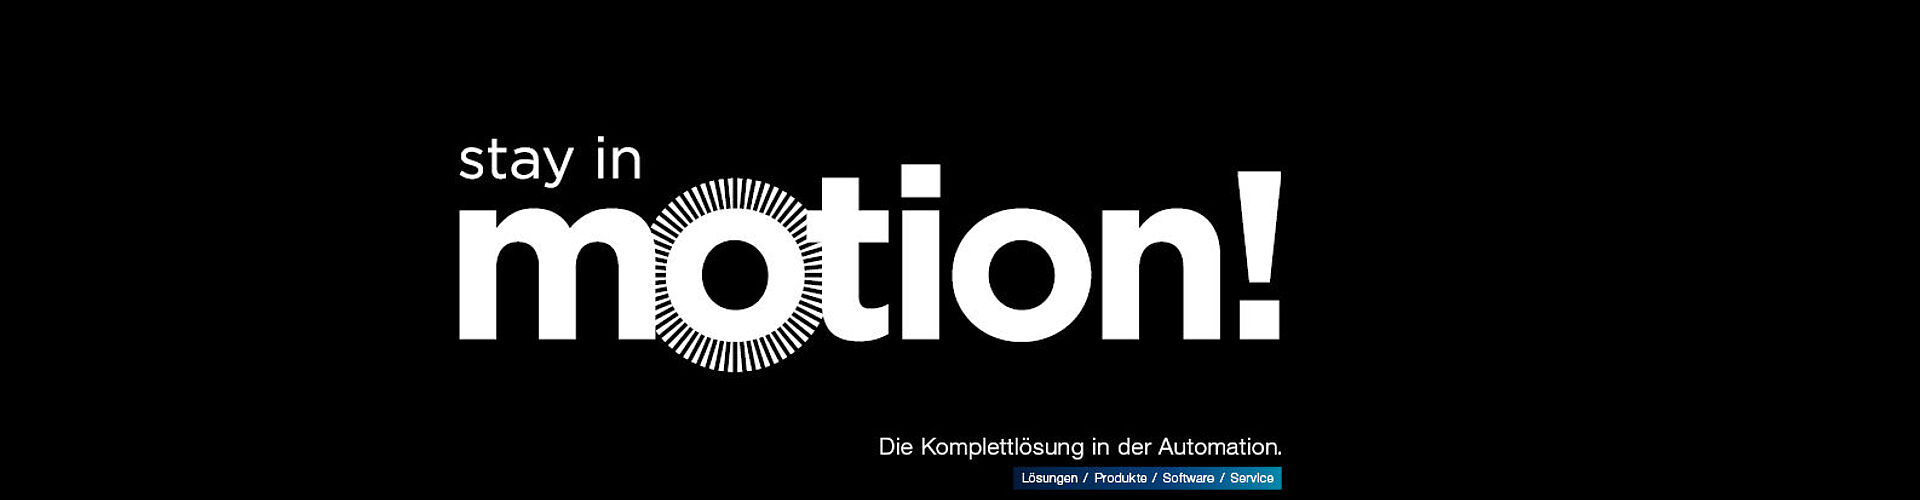 Stay in Motion! Die Komplettlösung in der Automation. Lösungen / Produkte / Software / Service